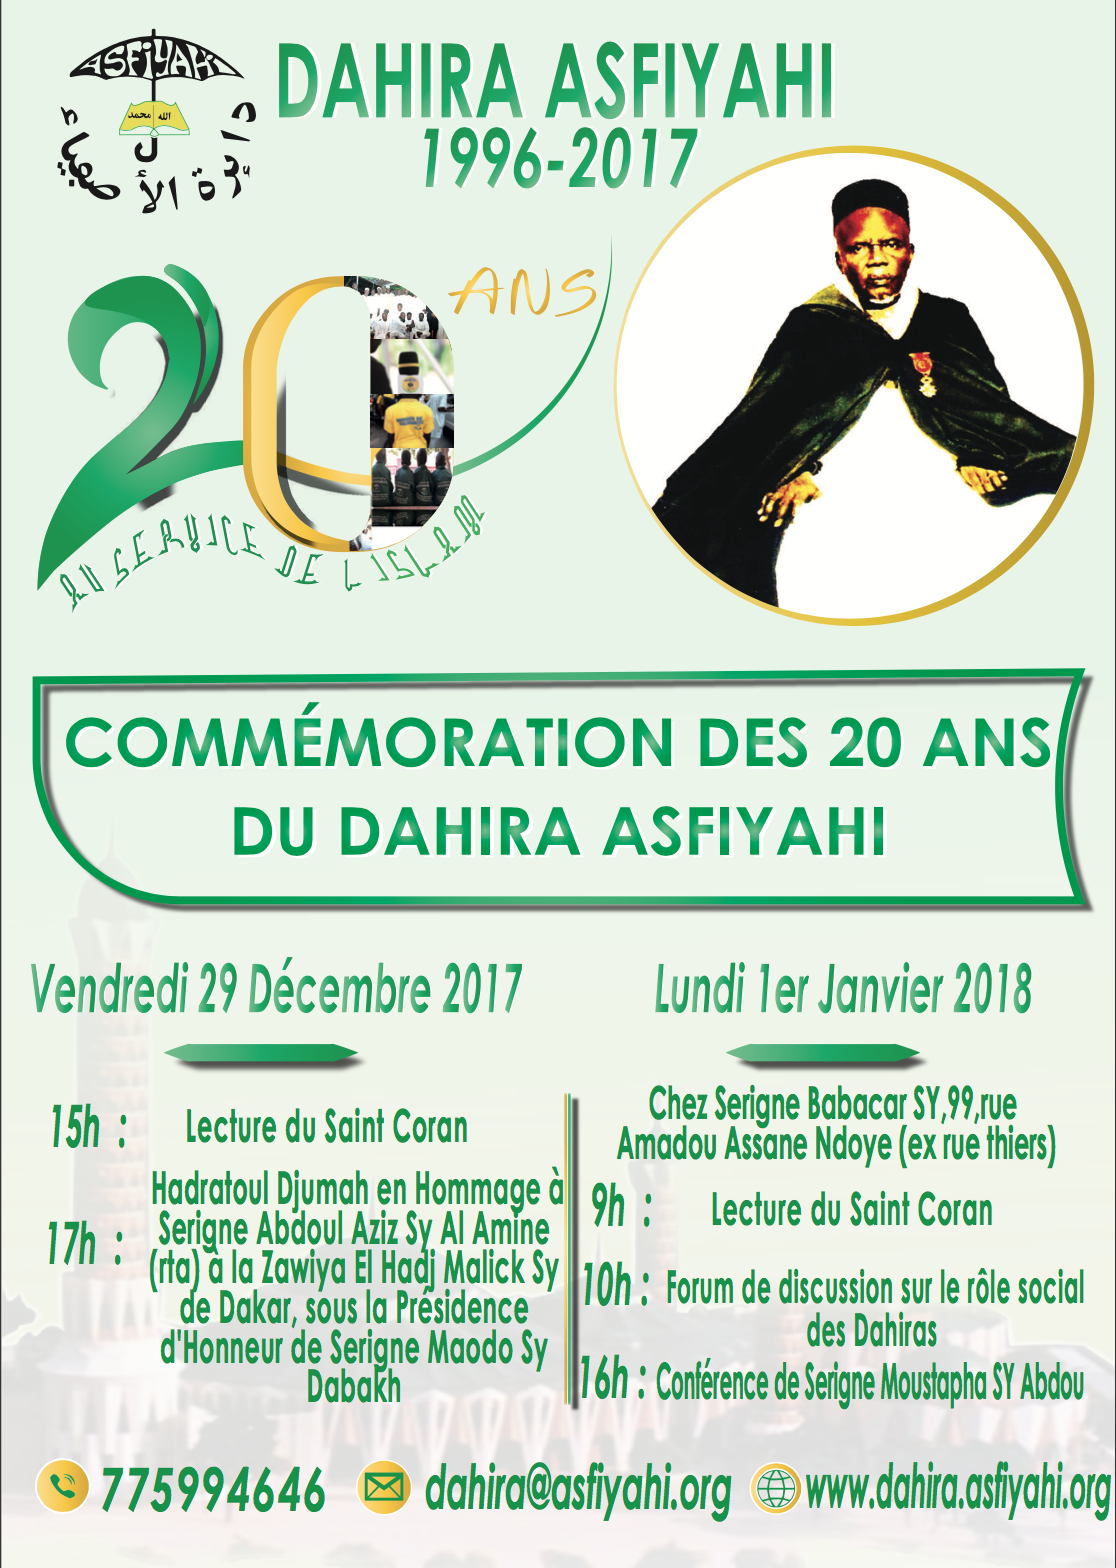 Commémoration des 20 ans du Dahiratoul Asfiyahi de Dakar Plateau: Lundi 1er Janvier 2018